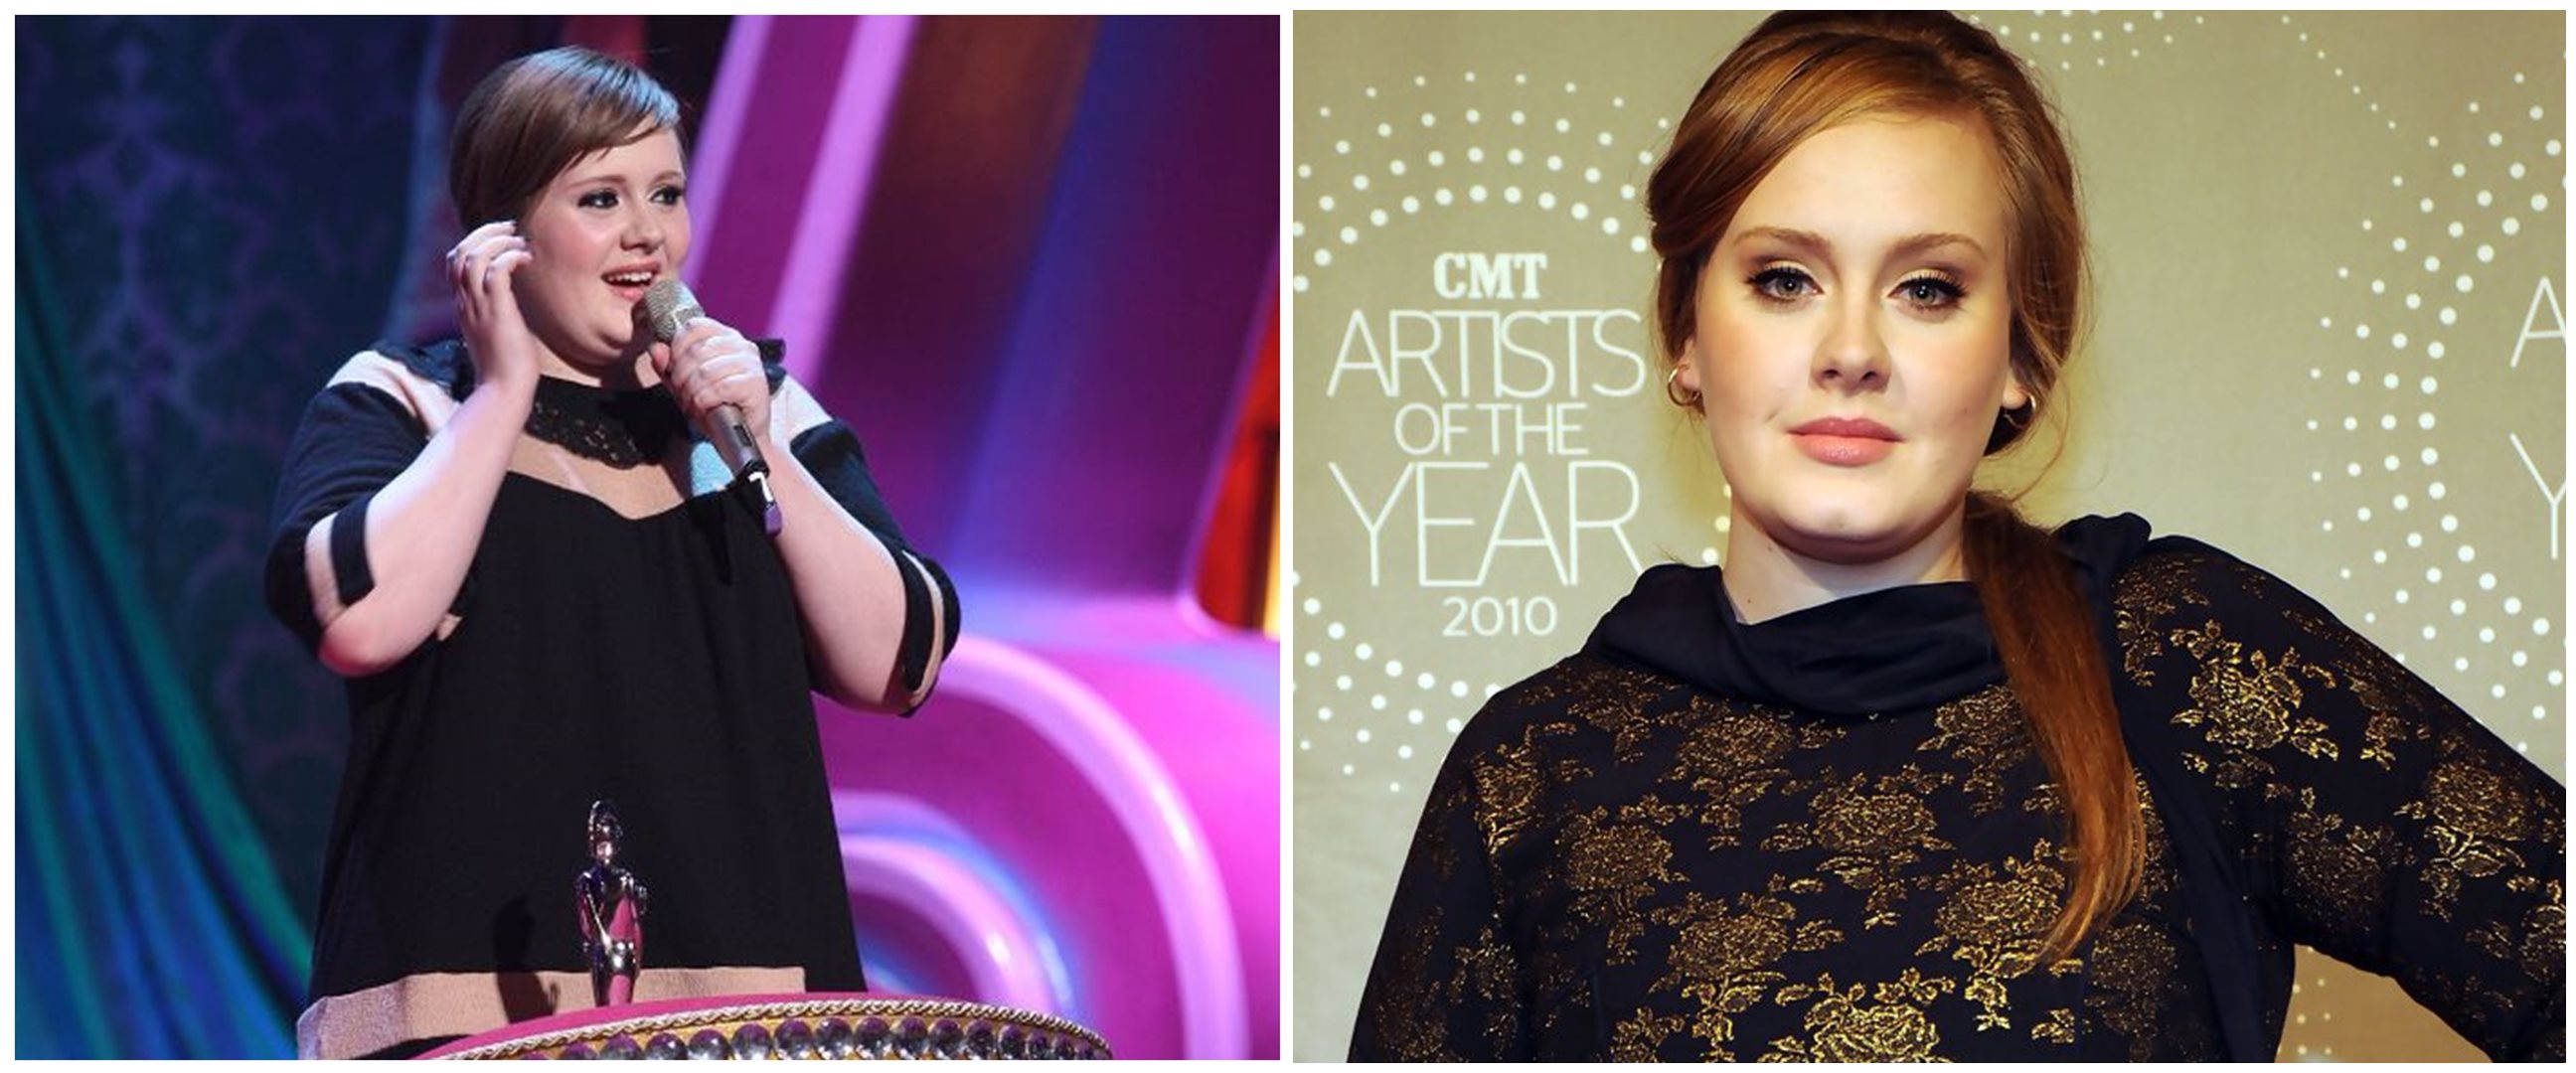 Unggah potret terbaru, Adele makin langsing dan manglingi